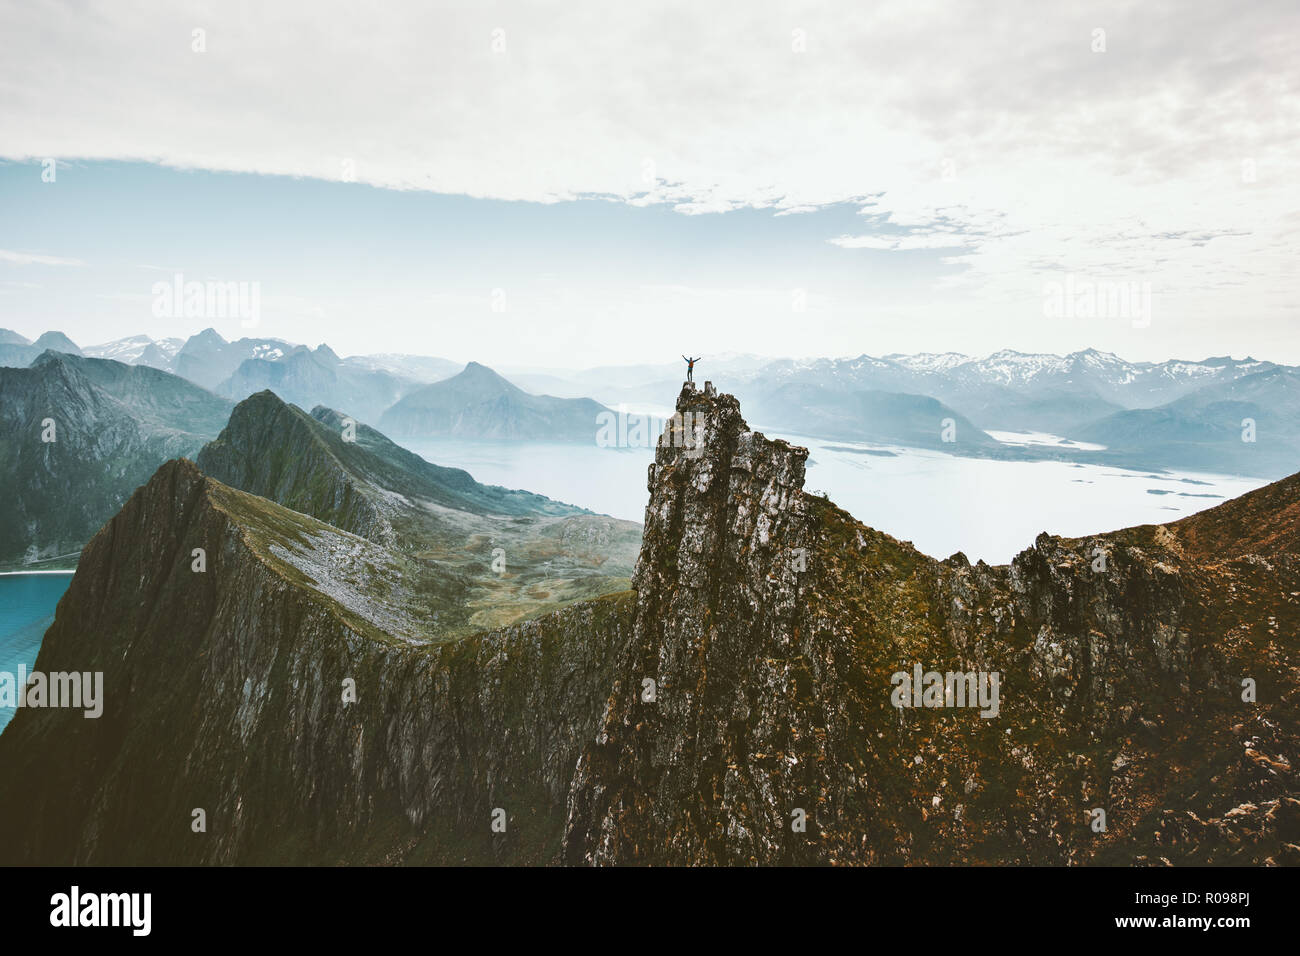 La Norvège voyage alpinisme homme debout sur la falaise au-dessus de montagne escalade aventure fjord voyage extreme lifestyle vacations vue aérienne landsca Banque D'Images